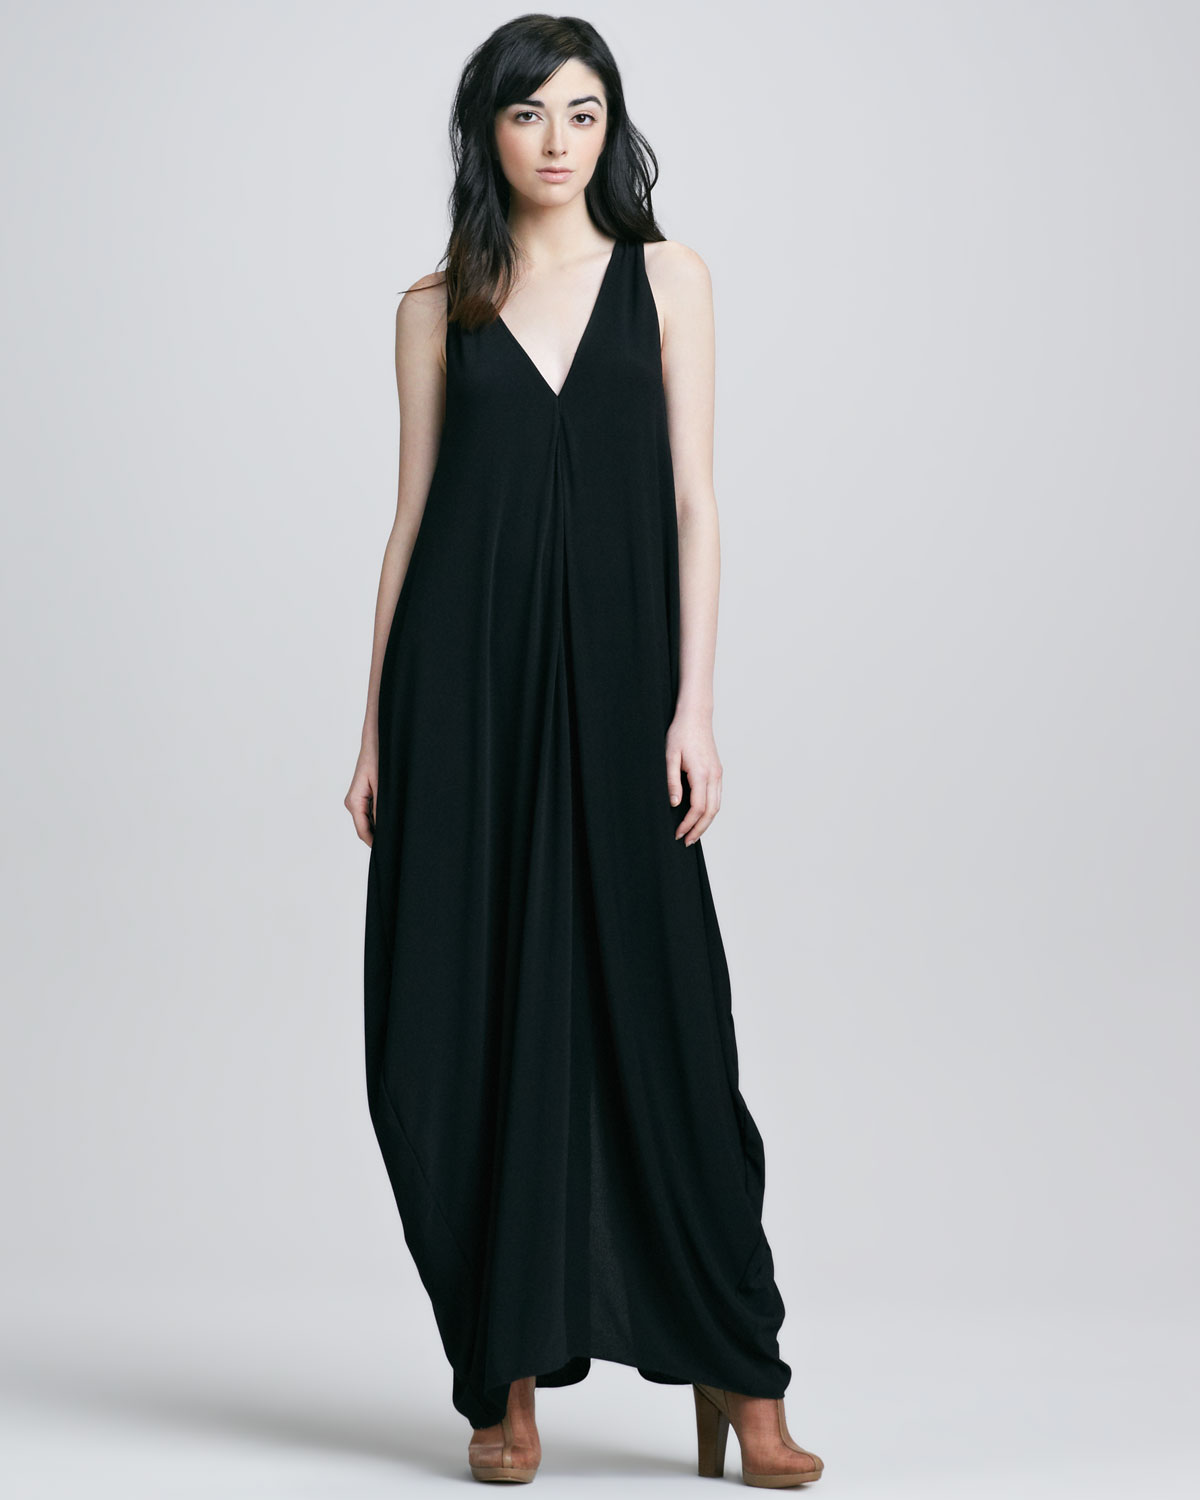 Lyst - Rachel Zoe Arlene Maxi Dress in Black